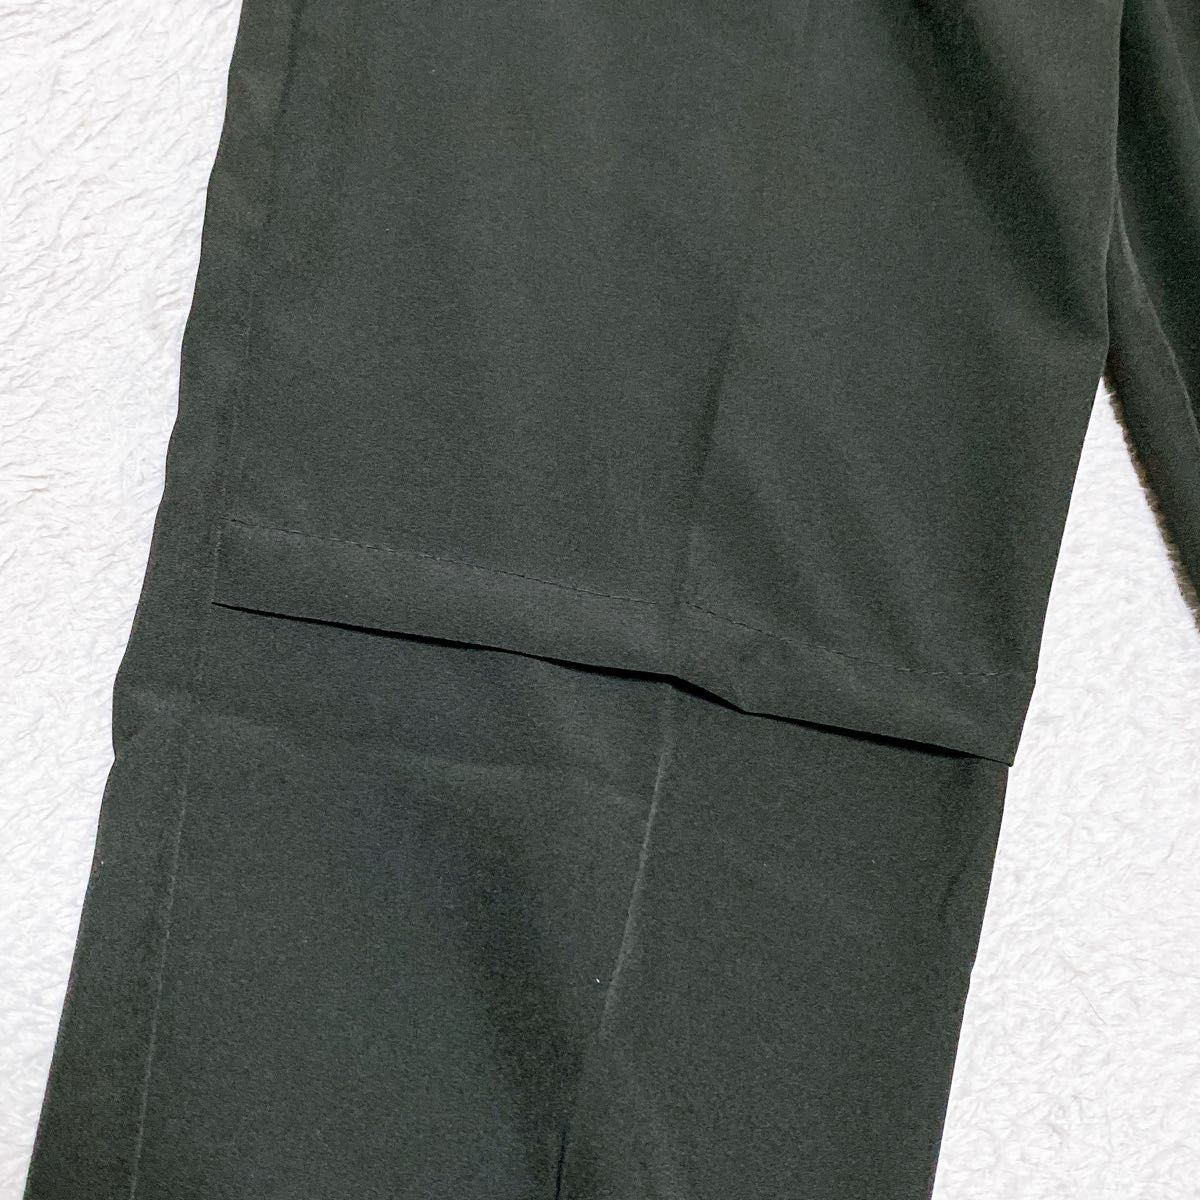 【GW限定セール】ジュニアパンツ ブラック 140 カーゴパンツ シンプル カジュアル キッズ 子供服